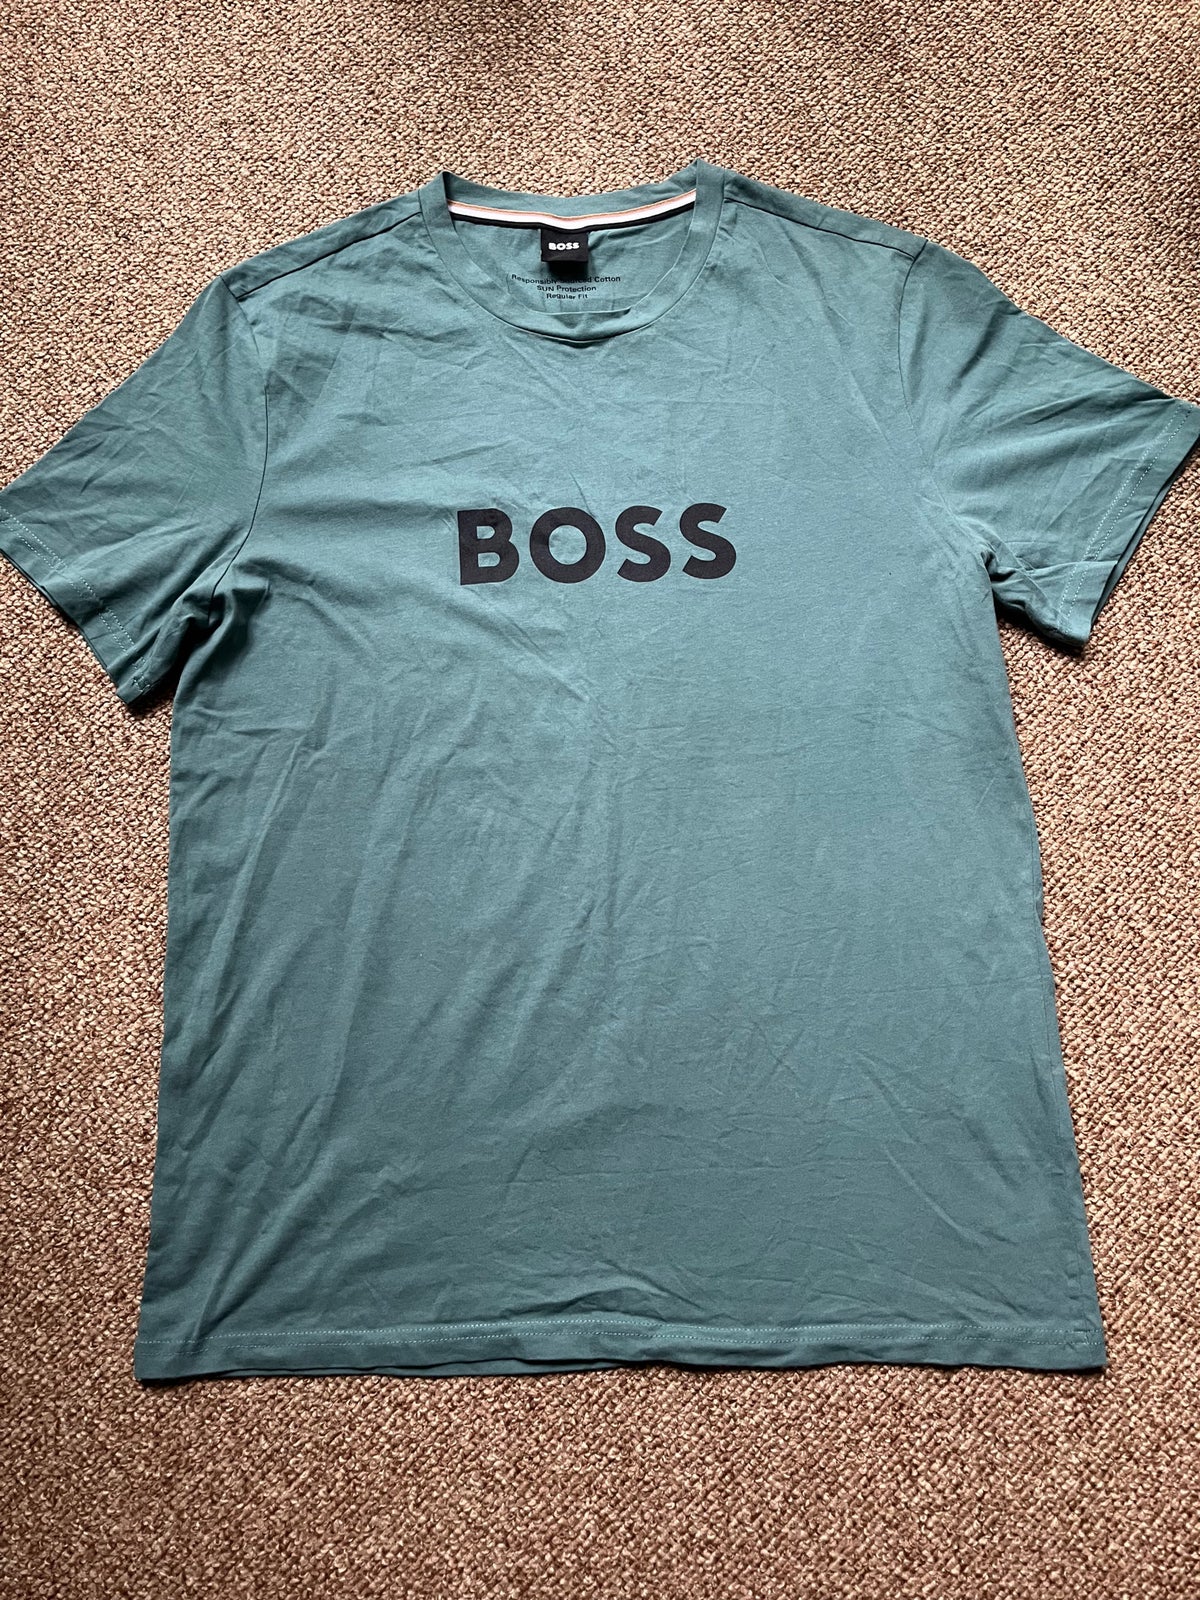 T-shirt, Boss, str. L